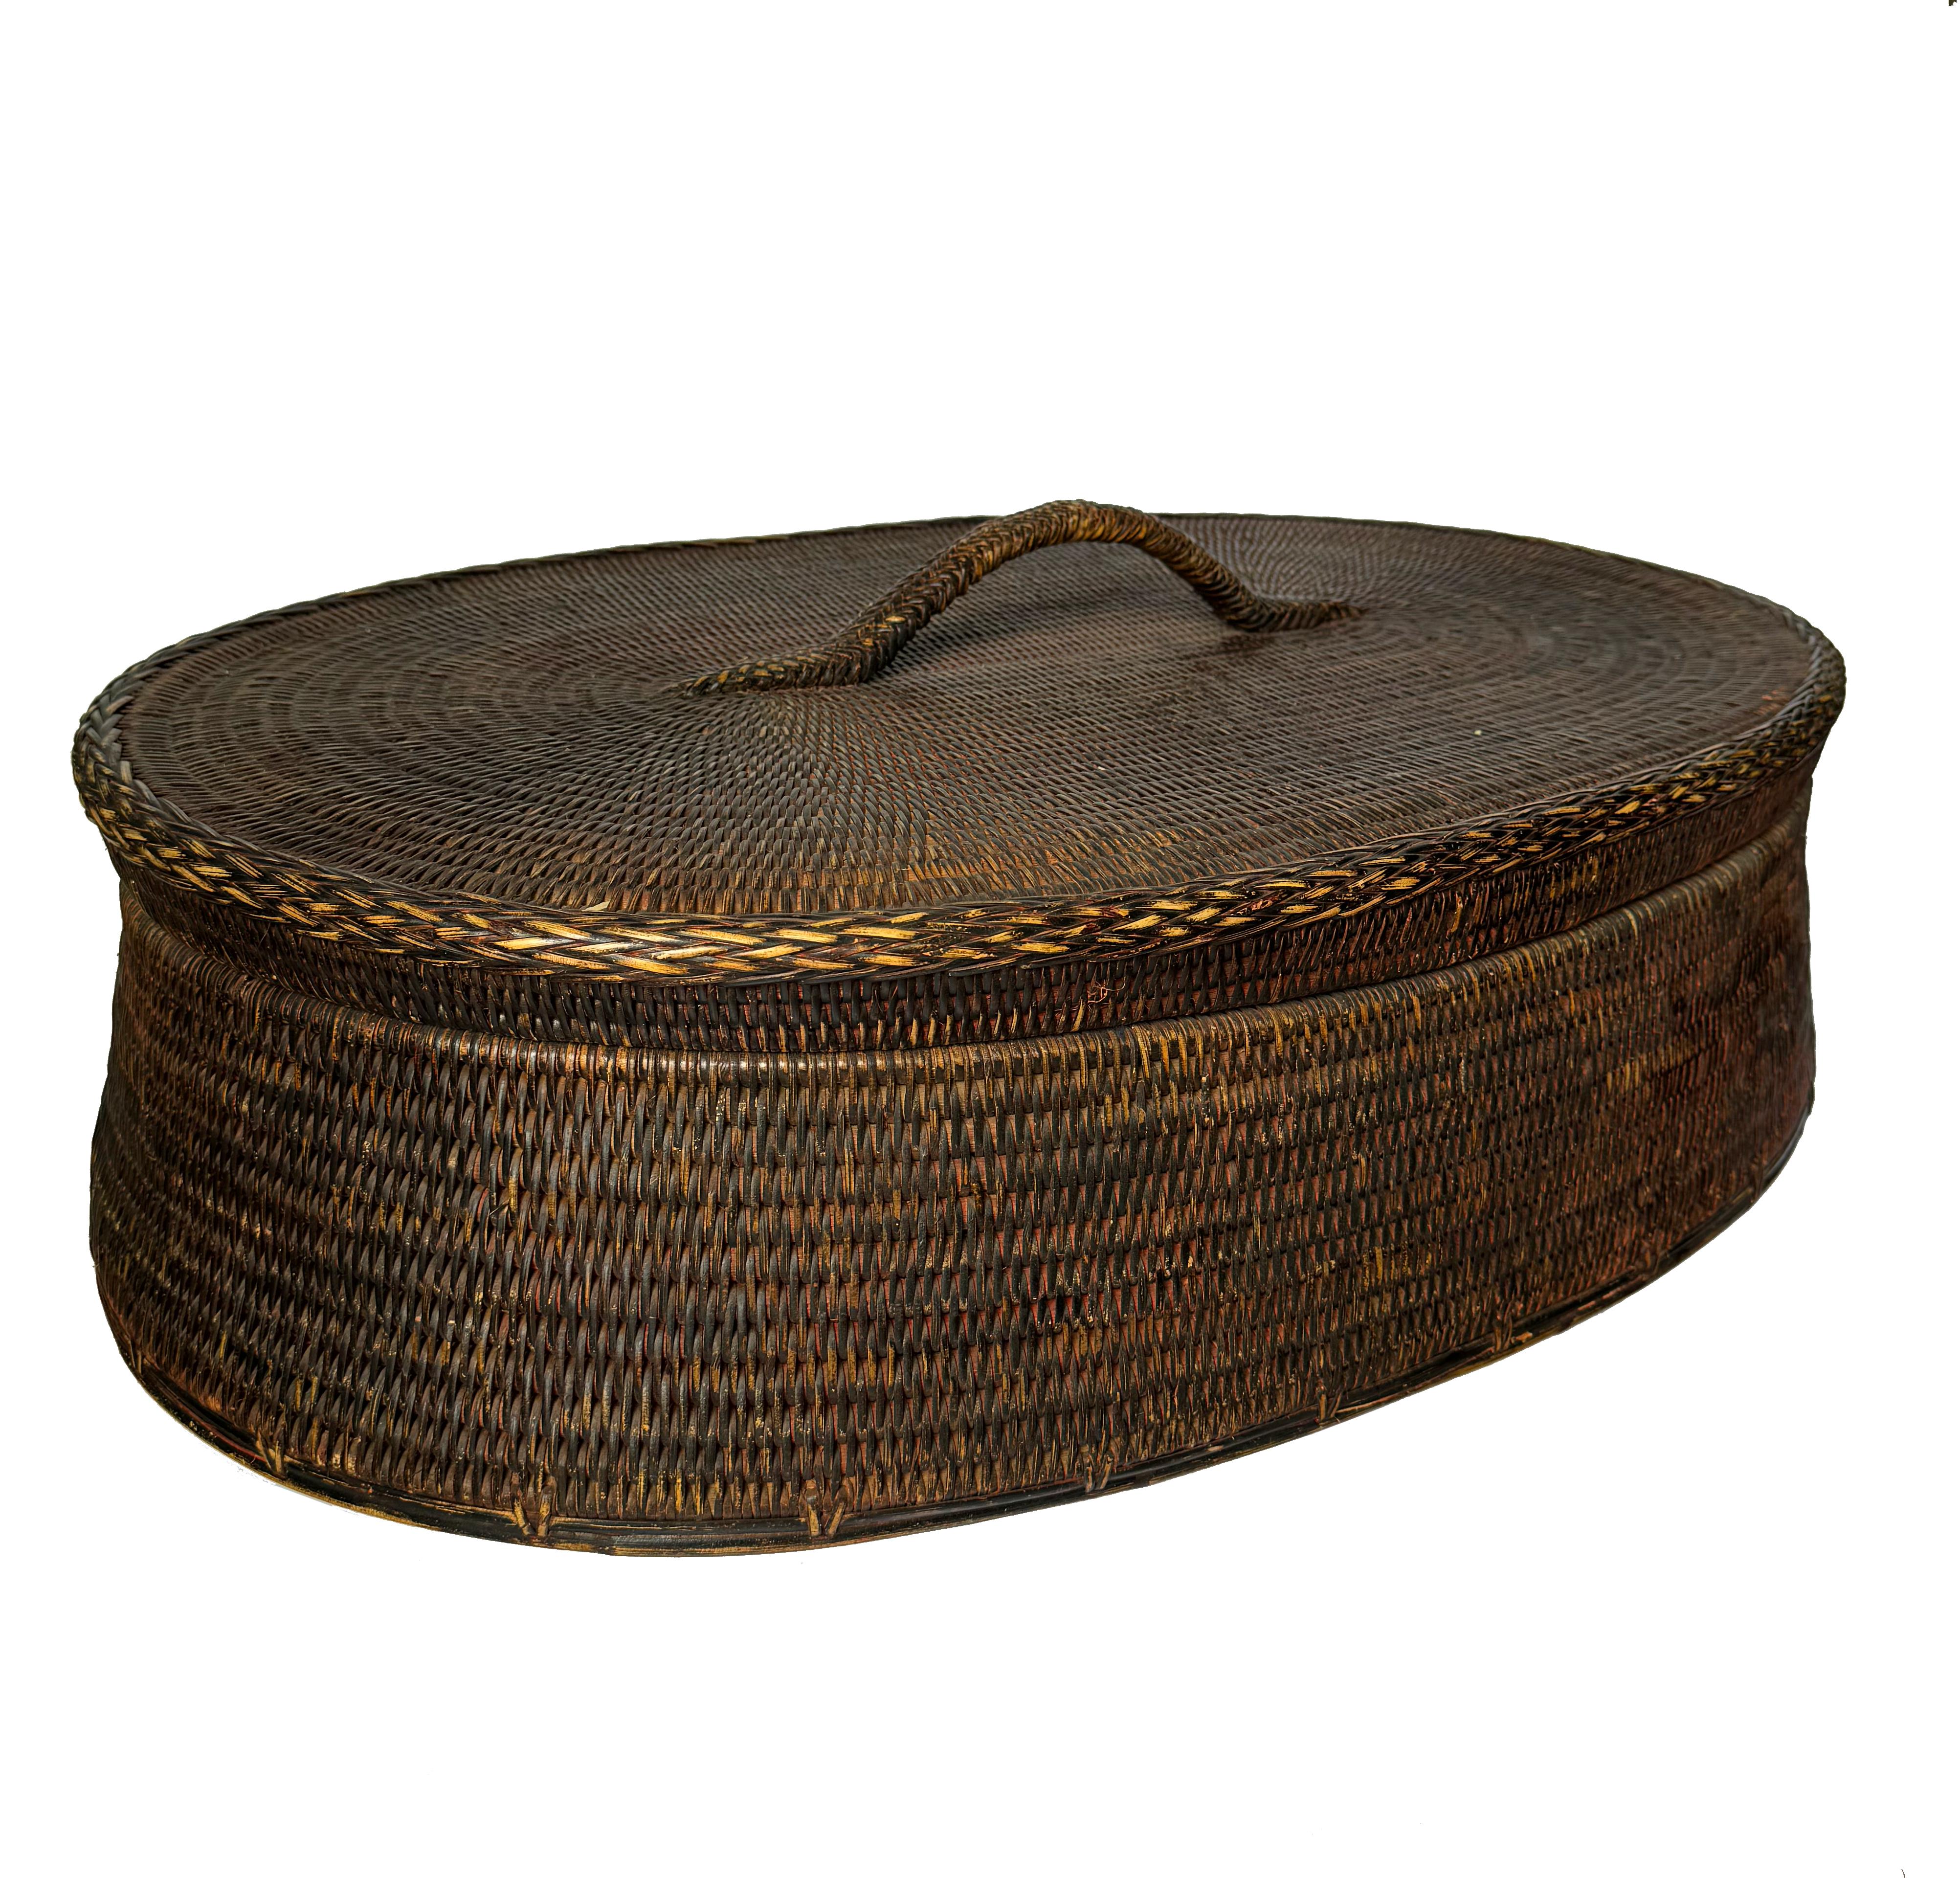 Dieser charmante quadratische Korb aus Rattan und Holz wird in Burma hergestellt. Sein rustikaler Reiz liegt in den kunstvoll gewebten Stoffen, die dem schlichten, aber eleganten Design Charakter verleihen. Ob im Schlafzimmer oder im Wohnzimmer,